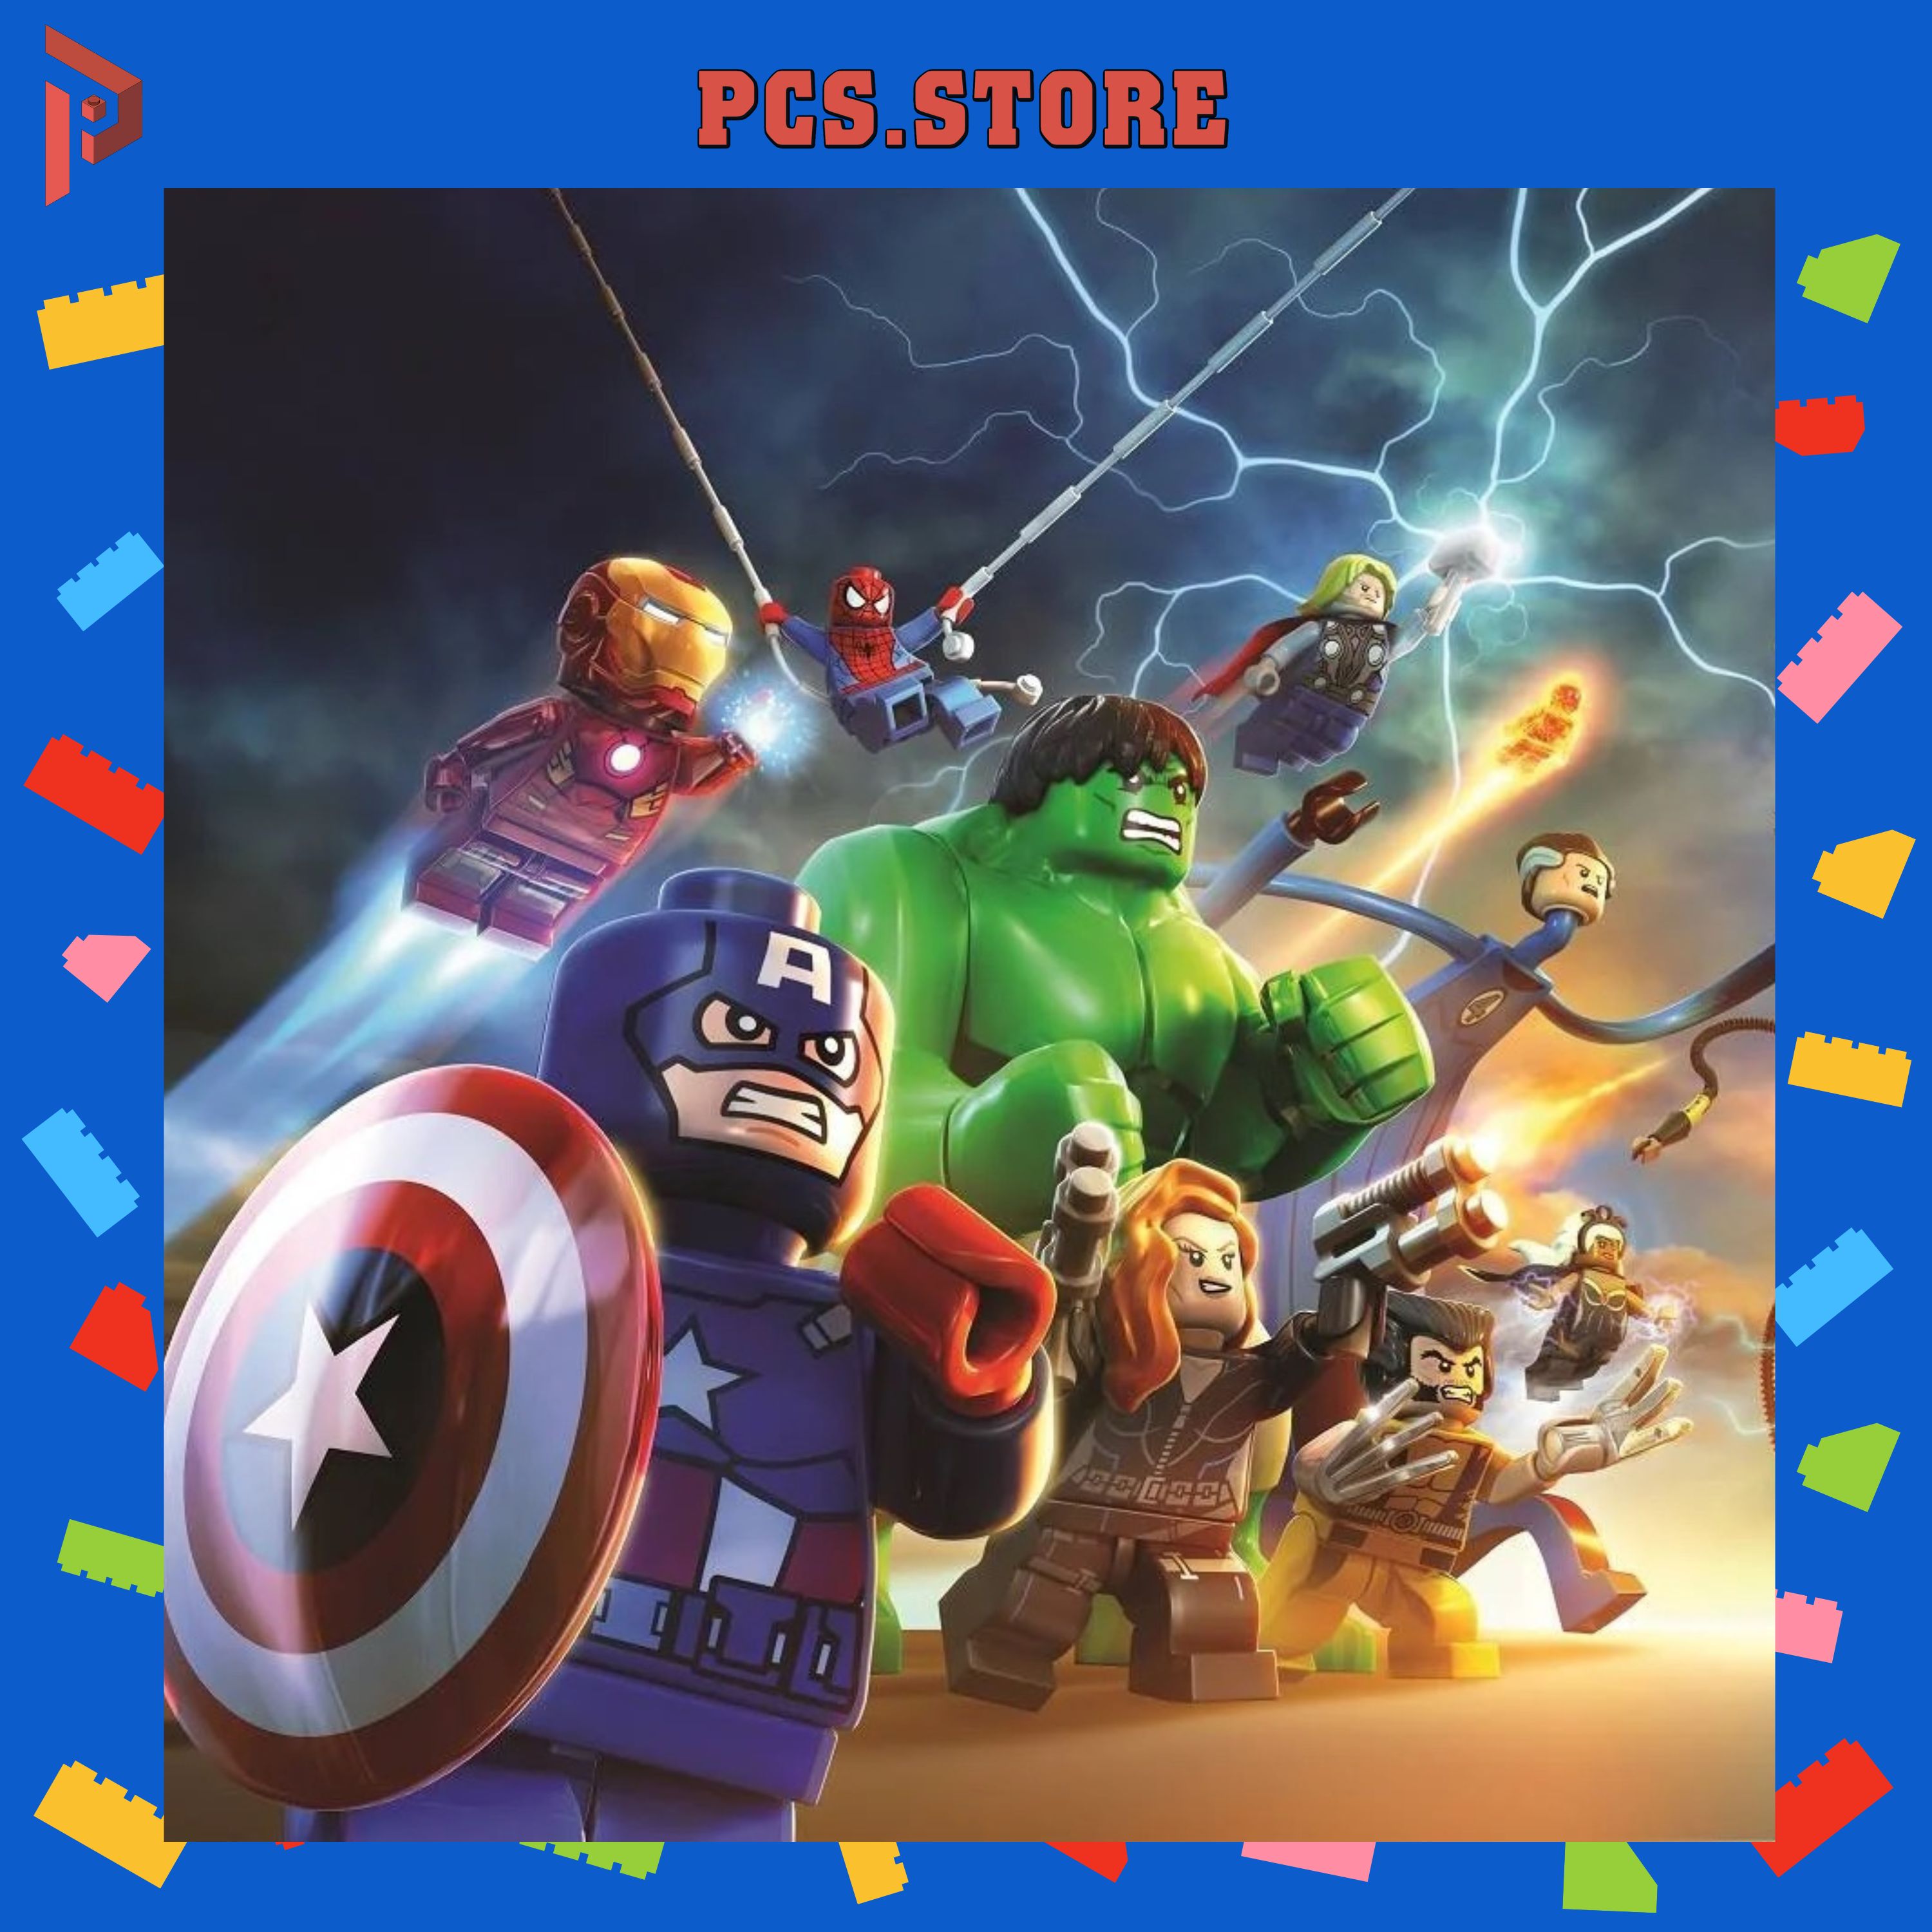 Đồ Chơi Lắp Ráp Minifigures Nhân Vật Bí Ẩn Siêu Anh Hùng Avengers Marvel DC - PCS STORE